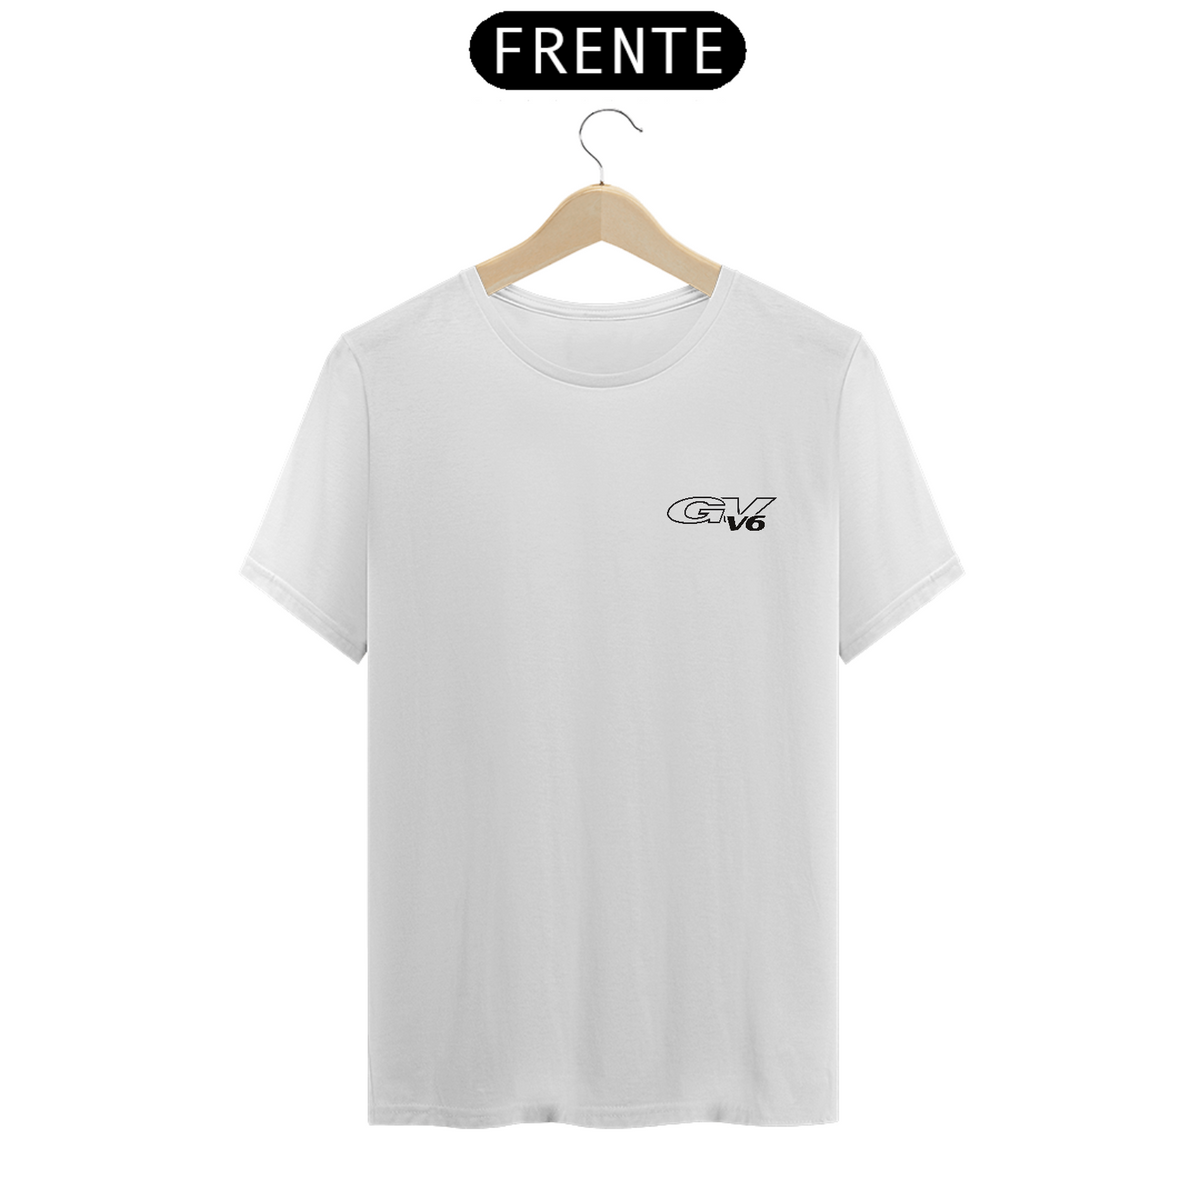 Nome do produto: T-Shirt Quality - GV 6V -Branca